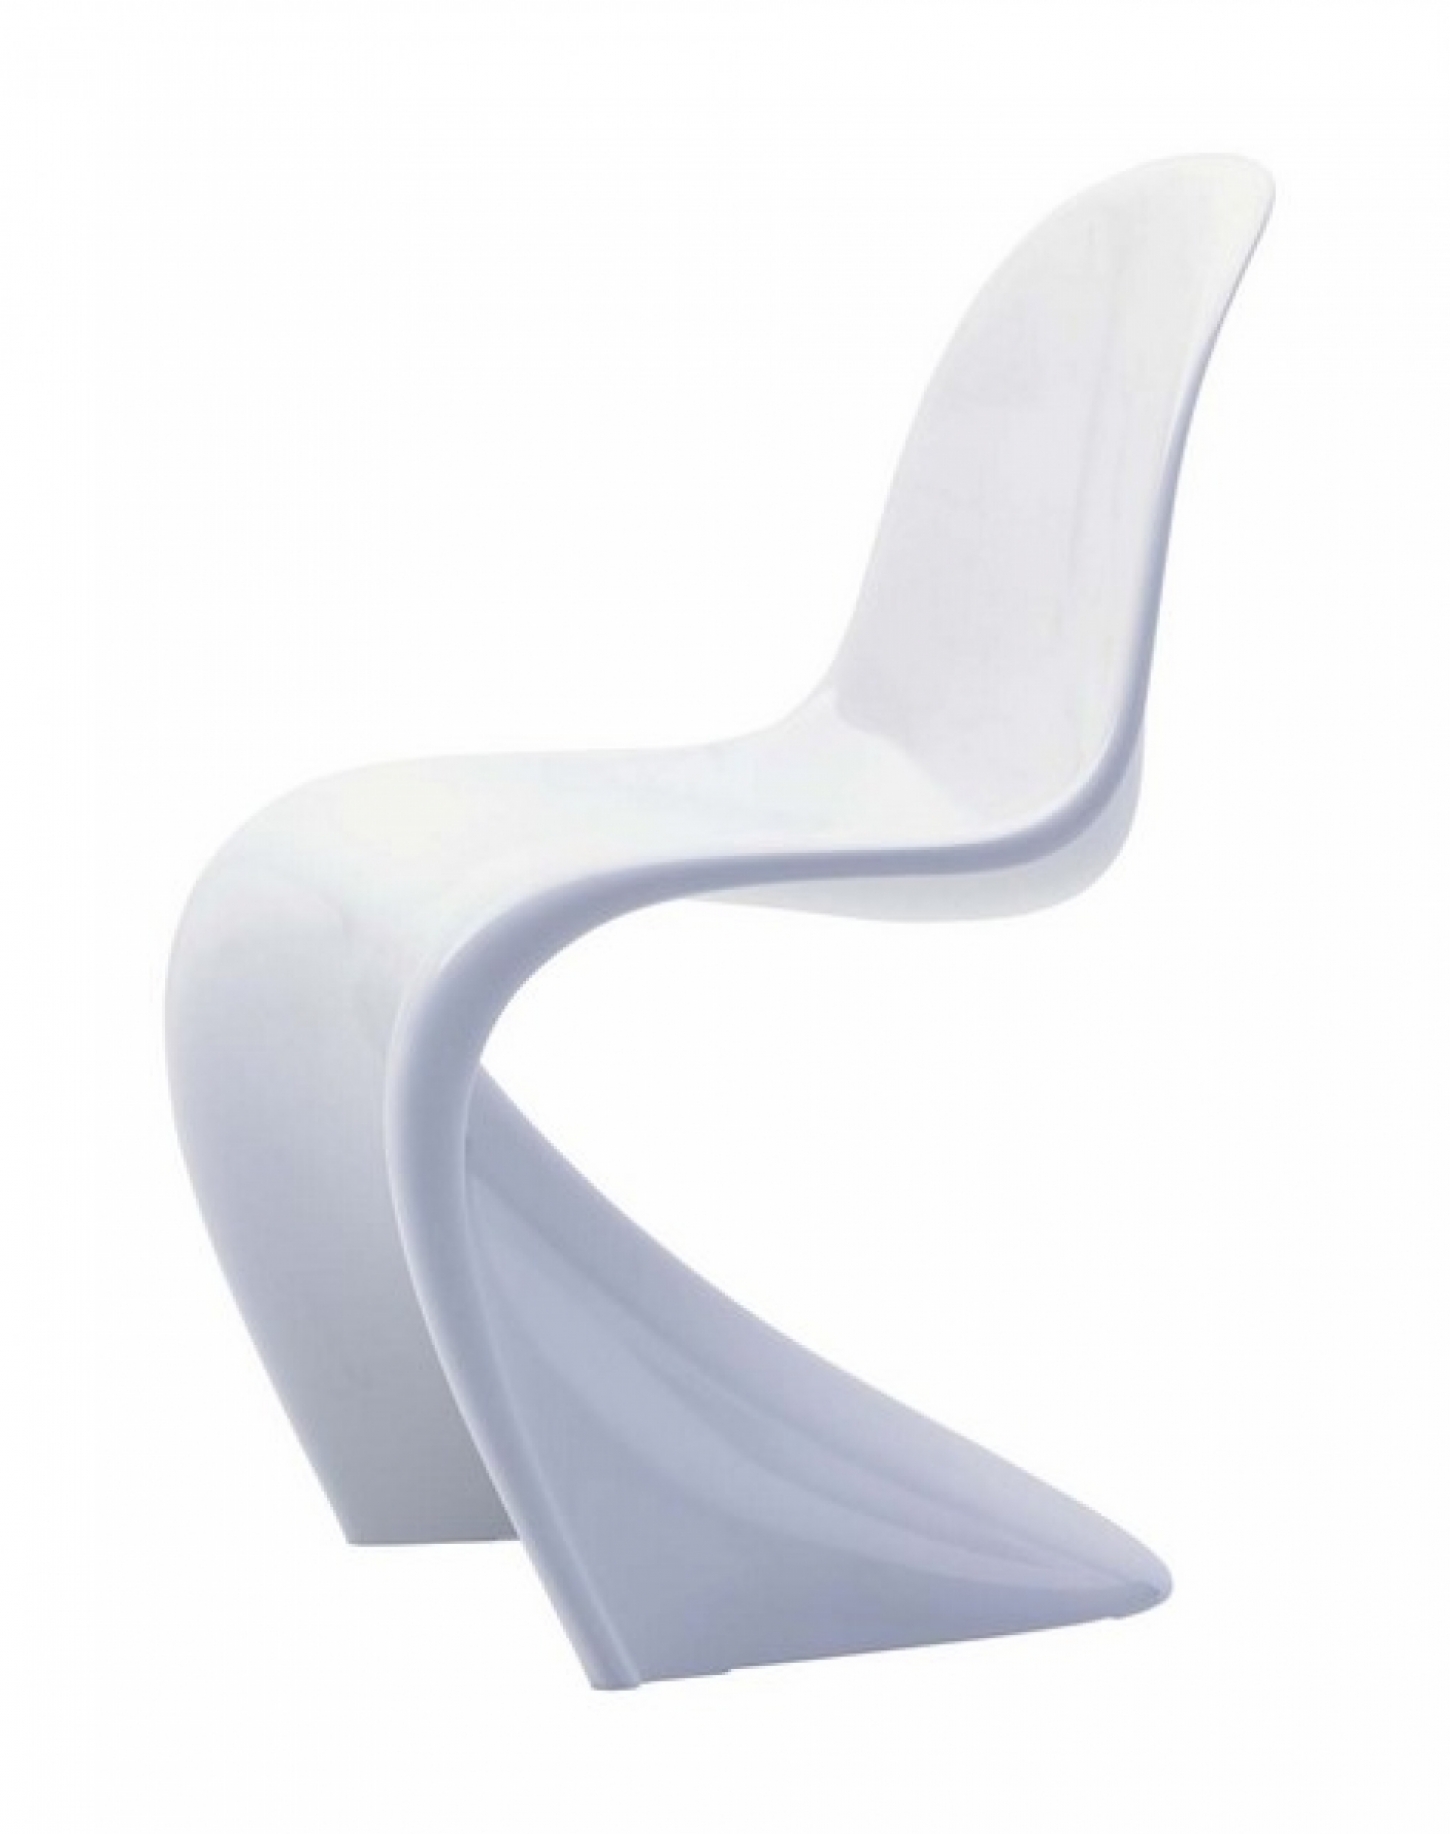 Ontworpen door Verner Panton in 1960 en daarna verder ontwikkeld samen met Vitra, dat is de originele Vitra Panton Chair.